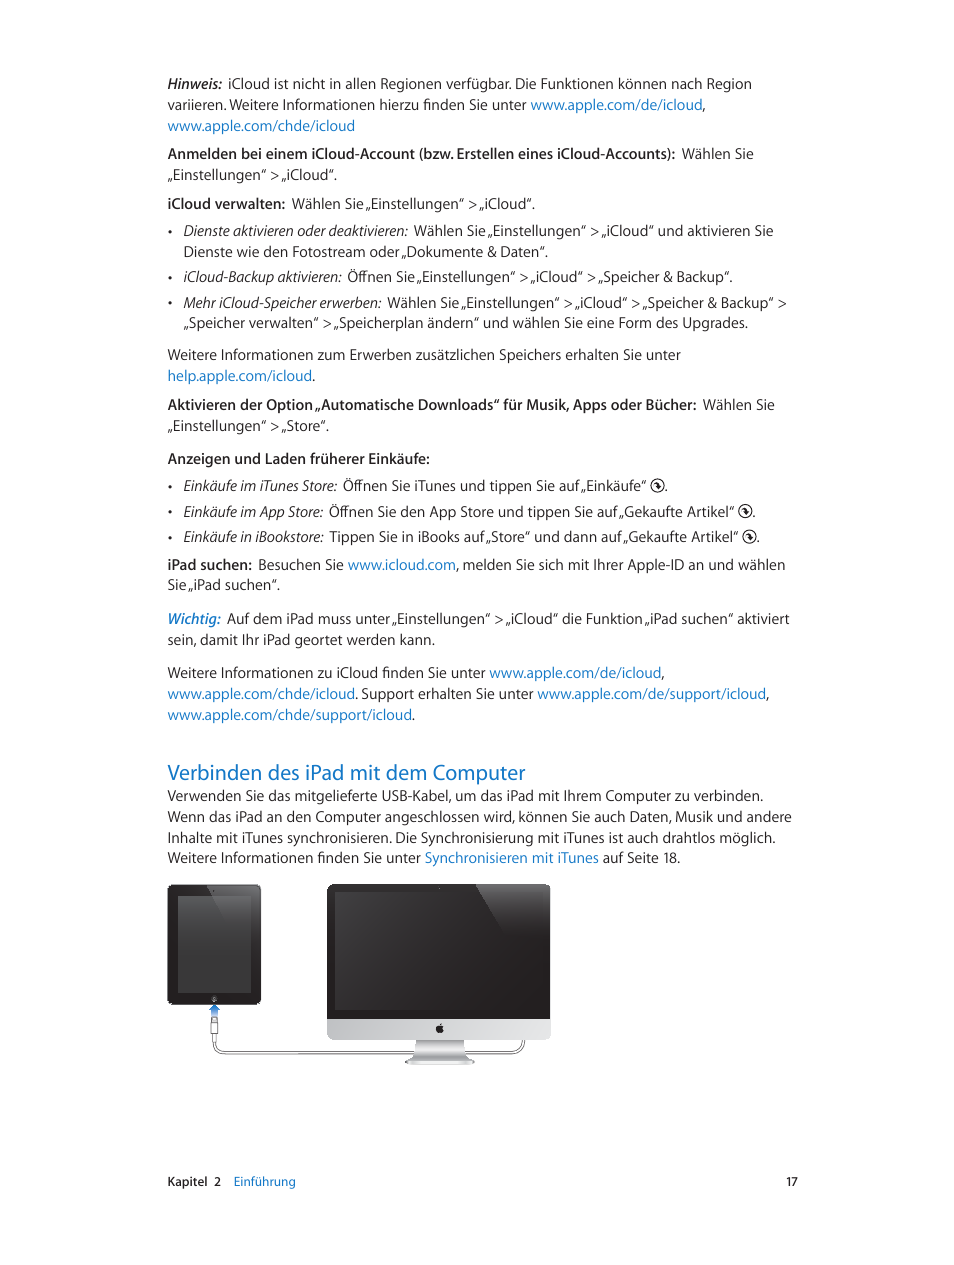 Verbinden des ipad mit dem computer, 17 verbinden des ipad mit dem computer | Apple iPad iOS 5.1 Benutzerhandbuch | Seite 17 / 158